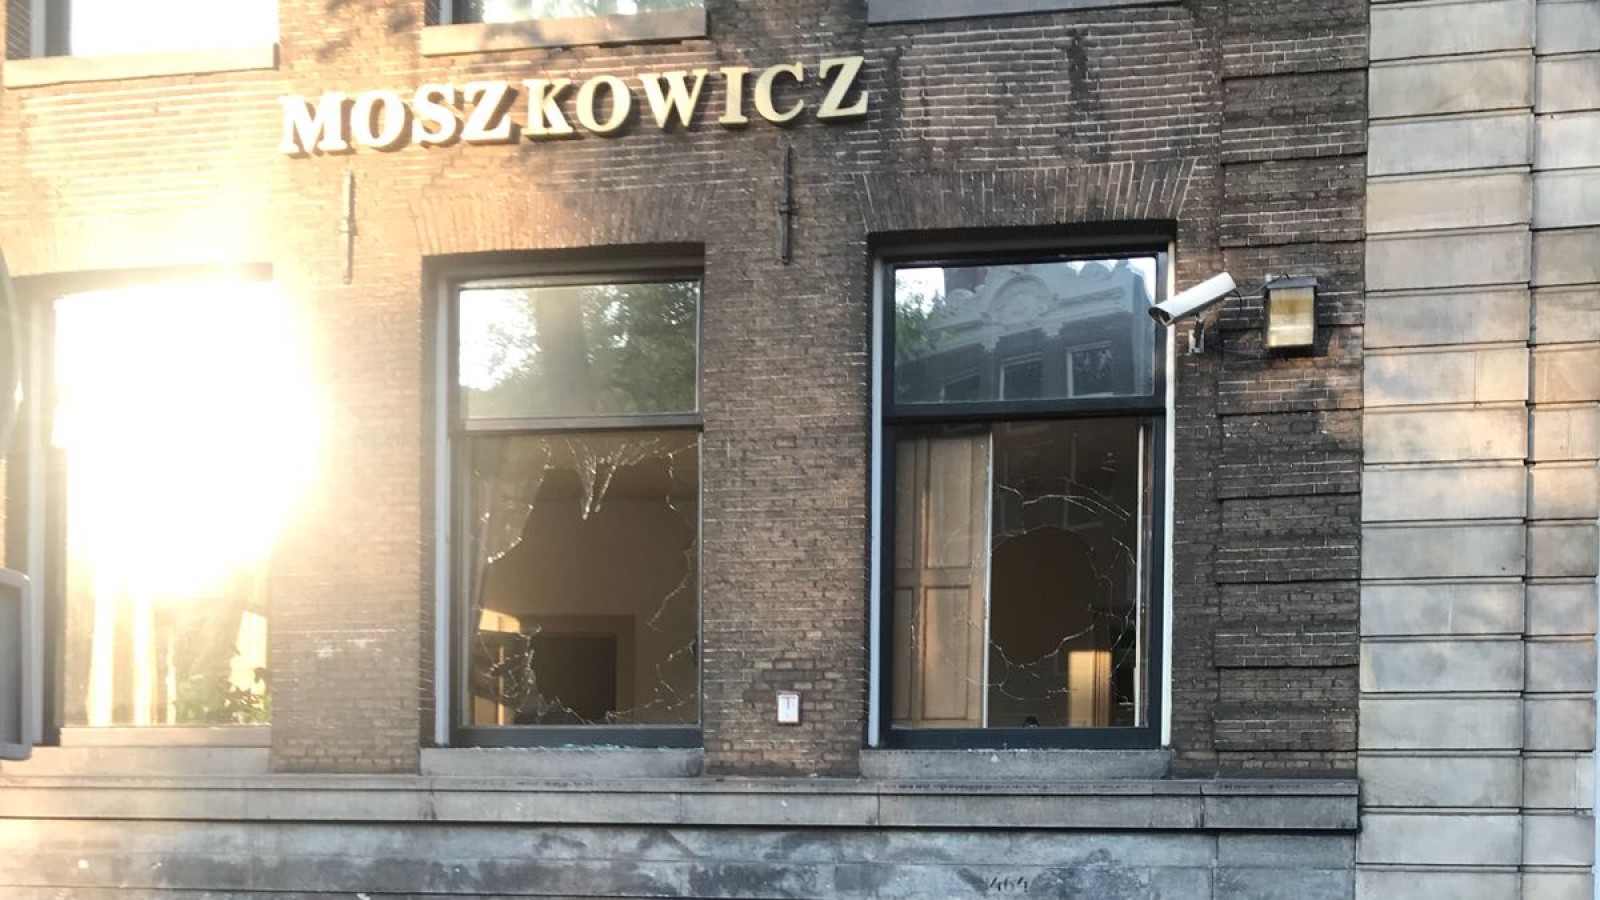 Ruiten ingegooid bij voormalig kantoor Moszkowicz op Herengracht